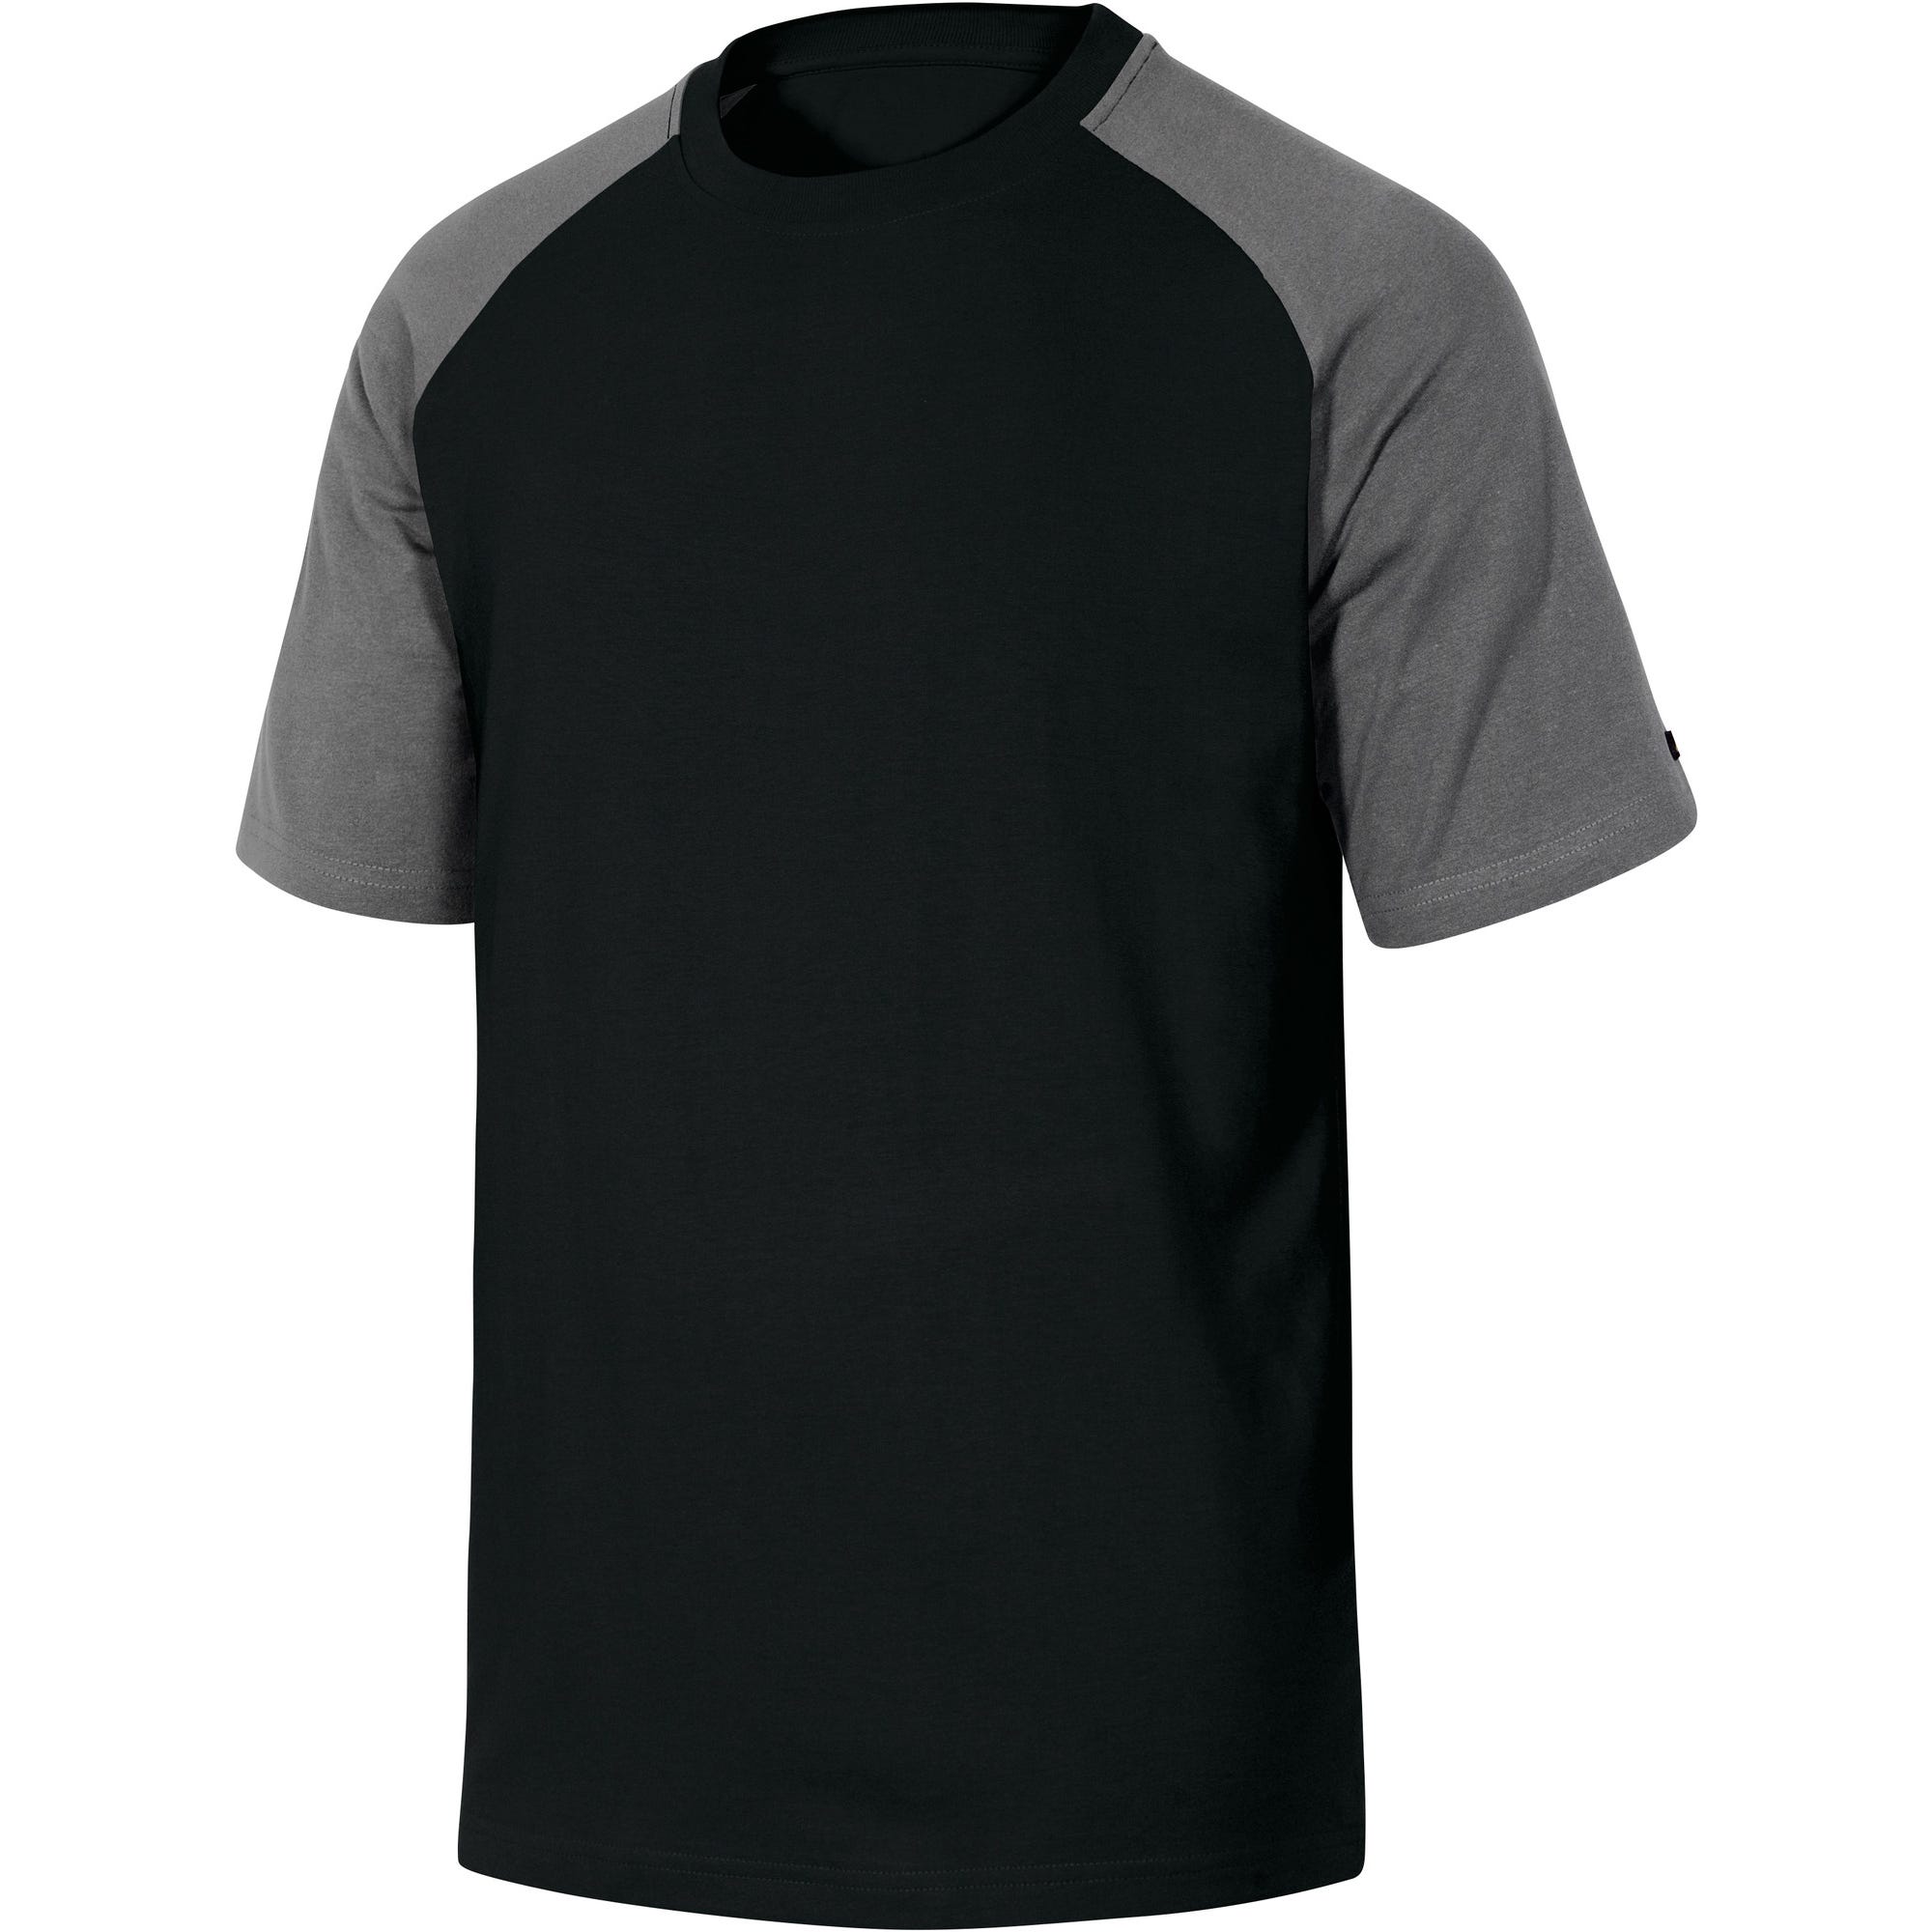 Tee-shirt noir / gris T.L Mach Spring - DELTA PLUS 0